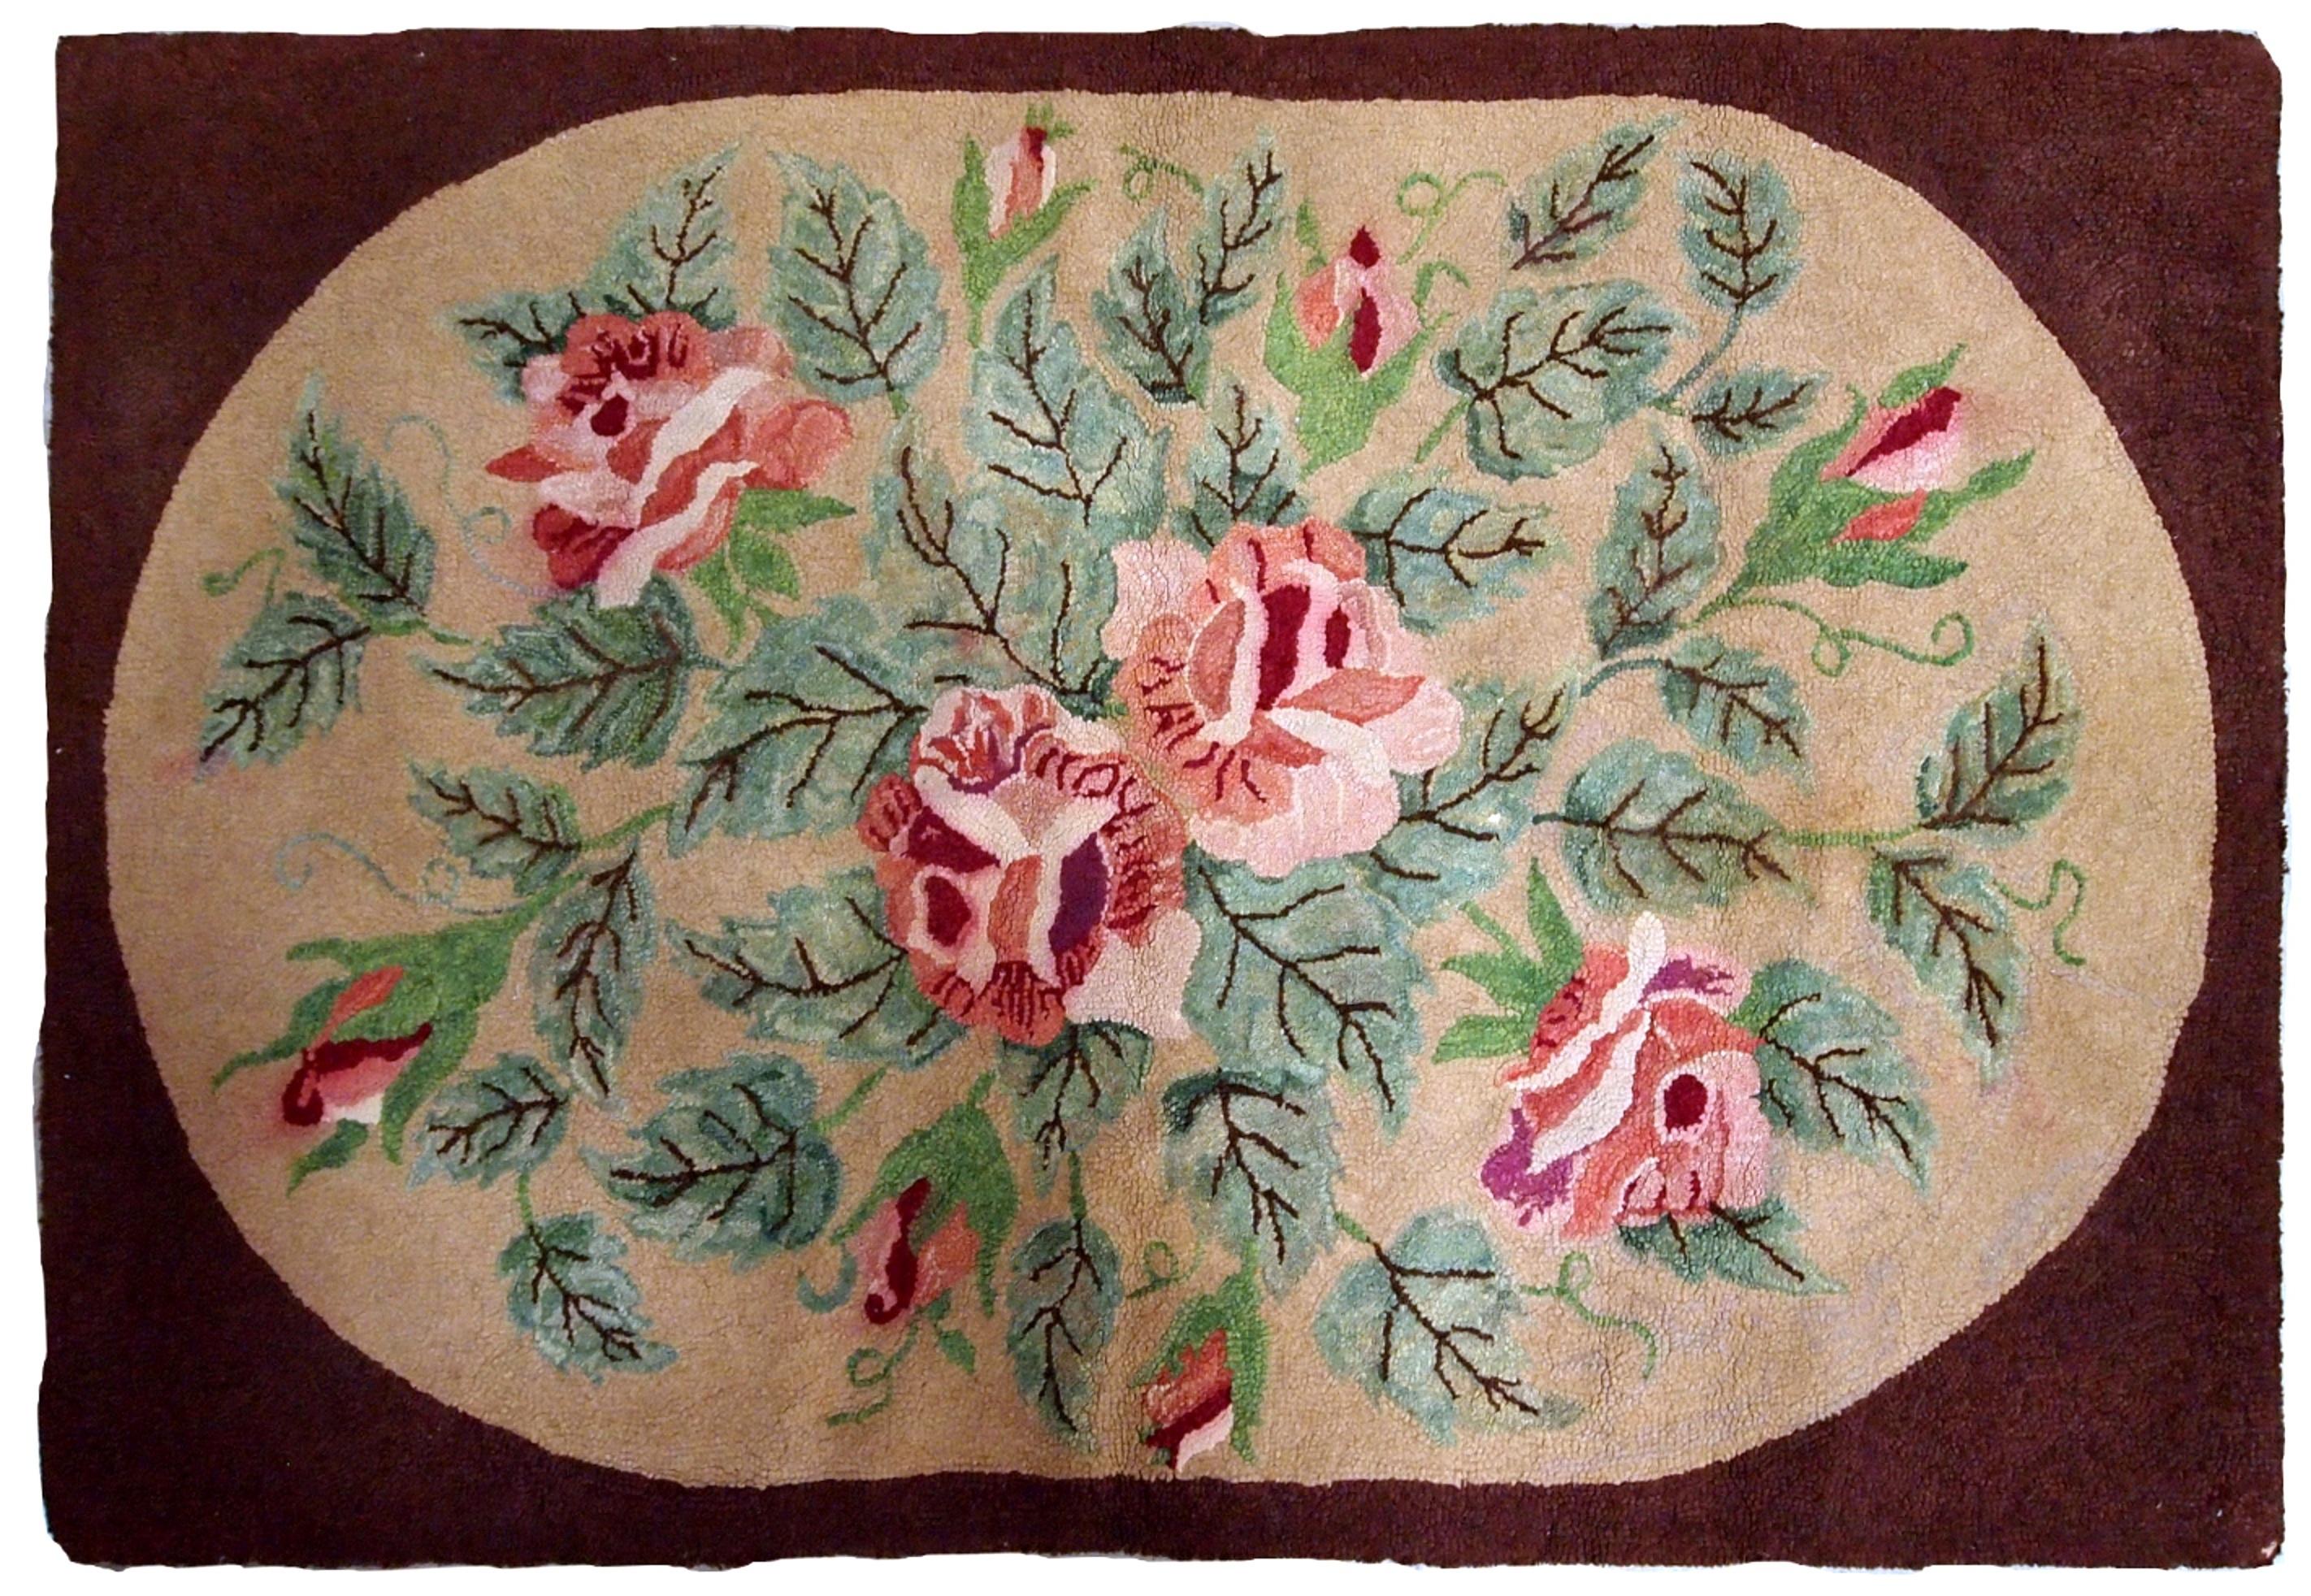 Handgefertigter antiker amerikanischer Hakenteppich mit roten Rosen. Der Teppich ist aus dem Anfang des 20. Jahrhunderts und in gutem Zustand.
 